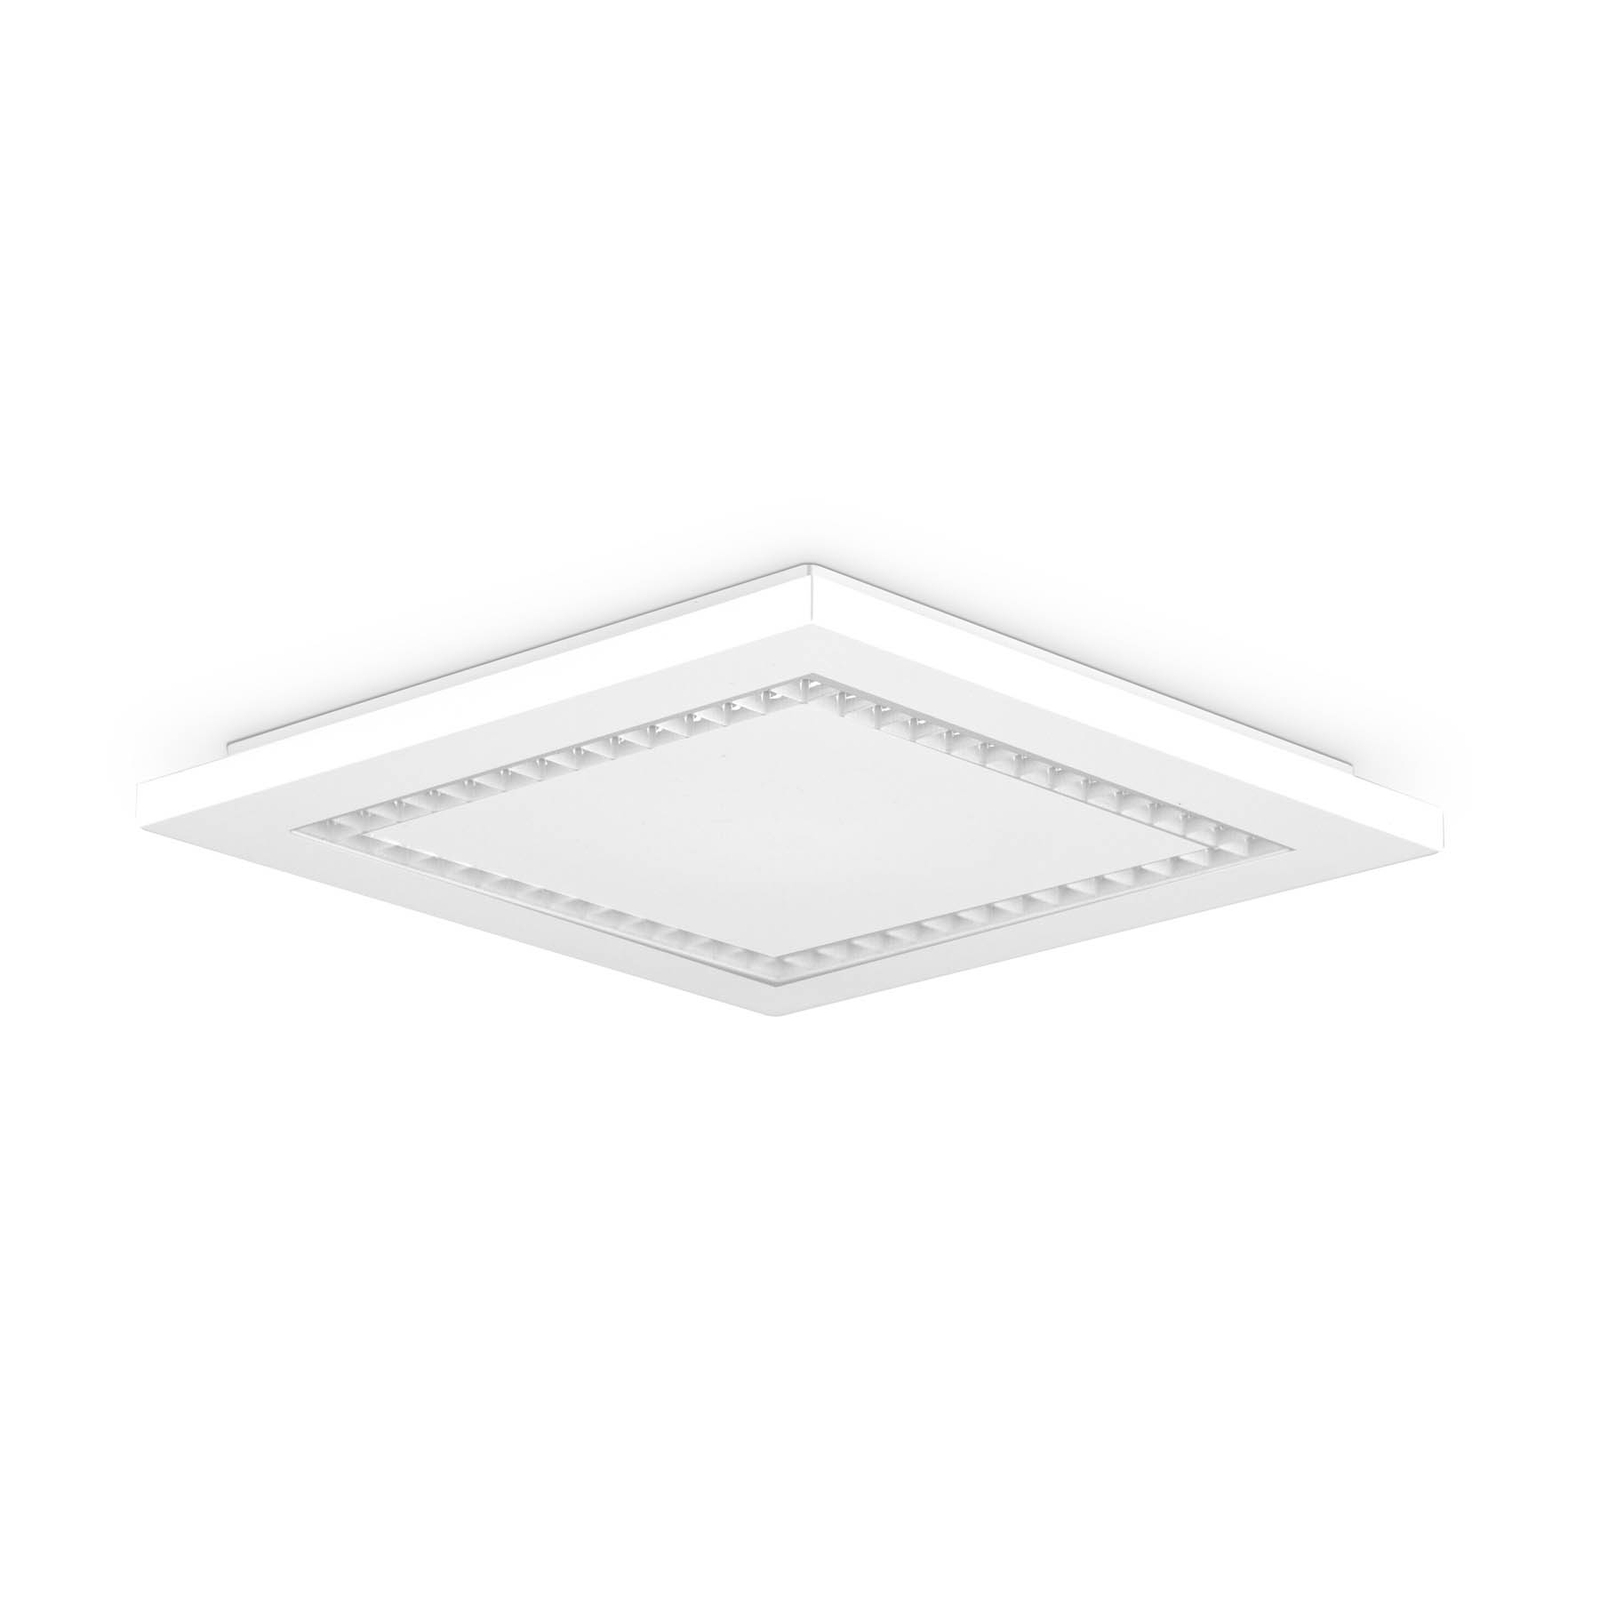 EVN ALQ pannello LED bianco 15W 30x30cm 3.000K